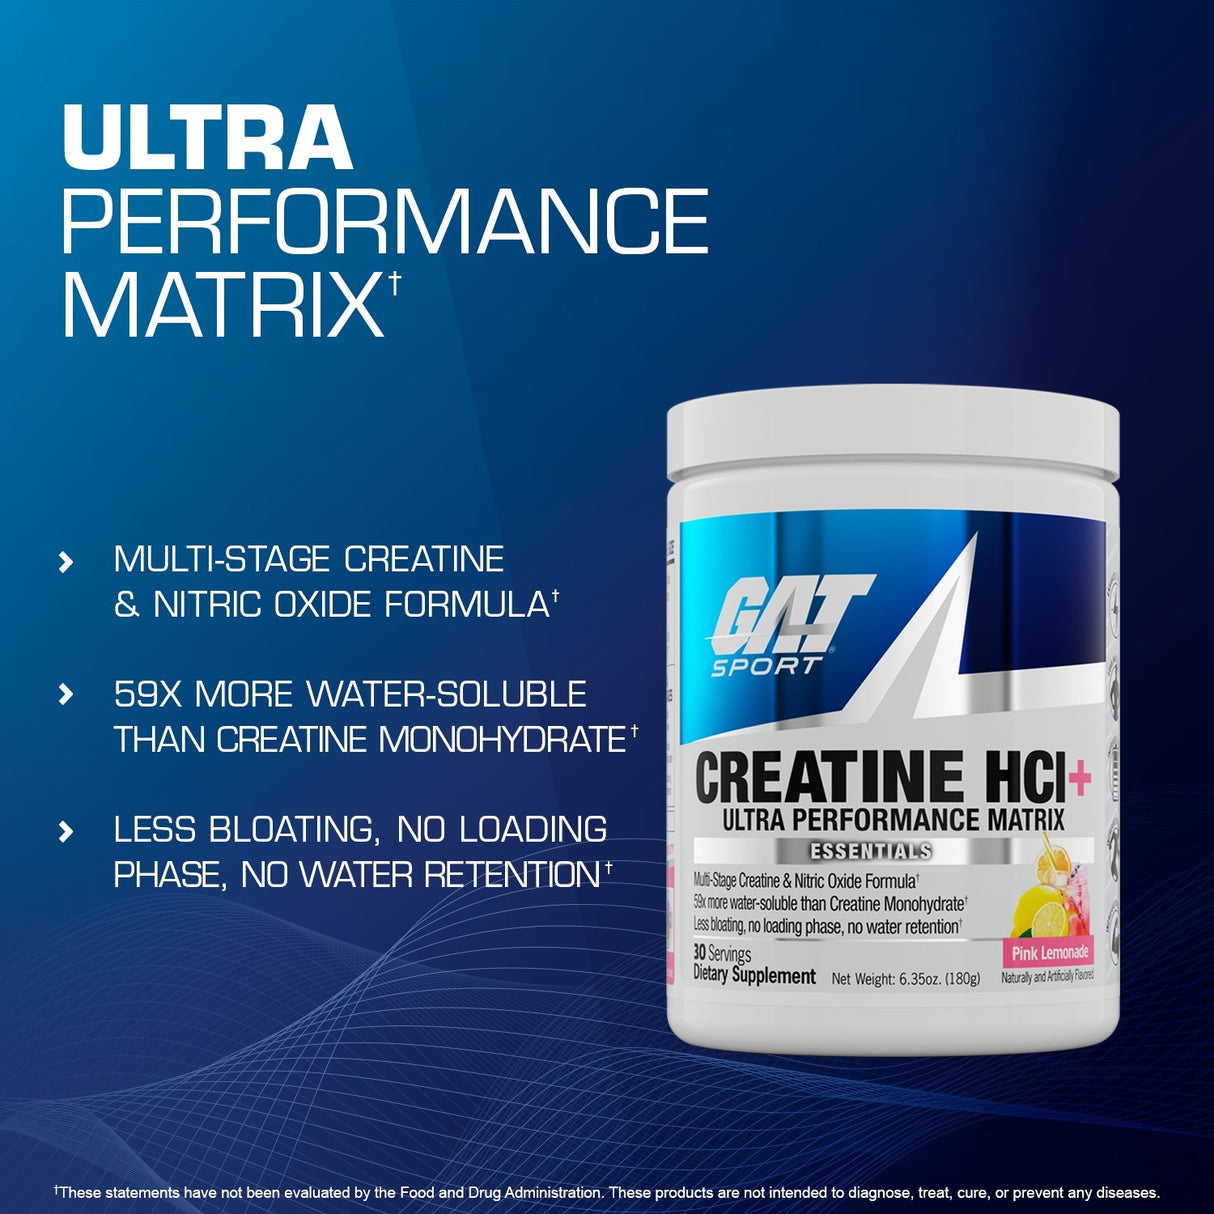 GAT SPORT CREATINE HCI+ N03-T Nitrate Matrix - ultra performance matrix